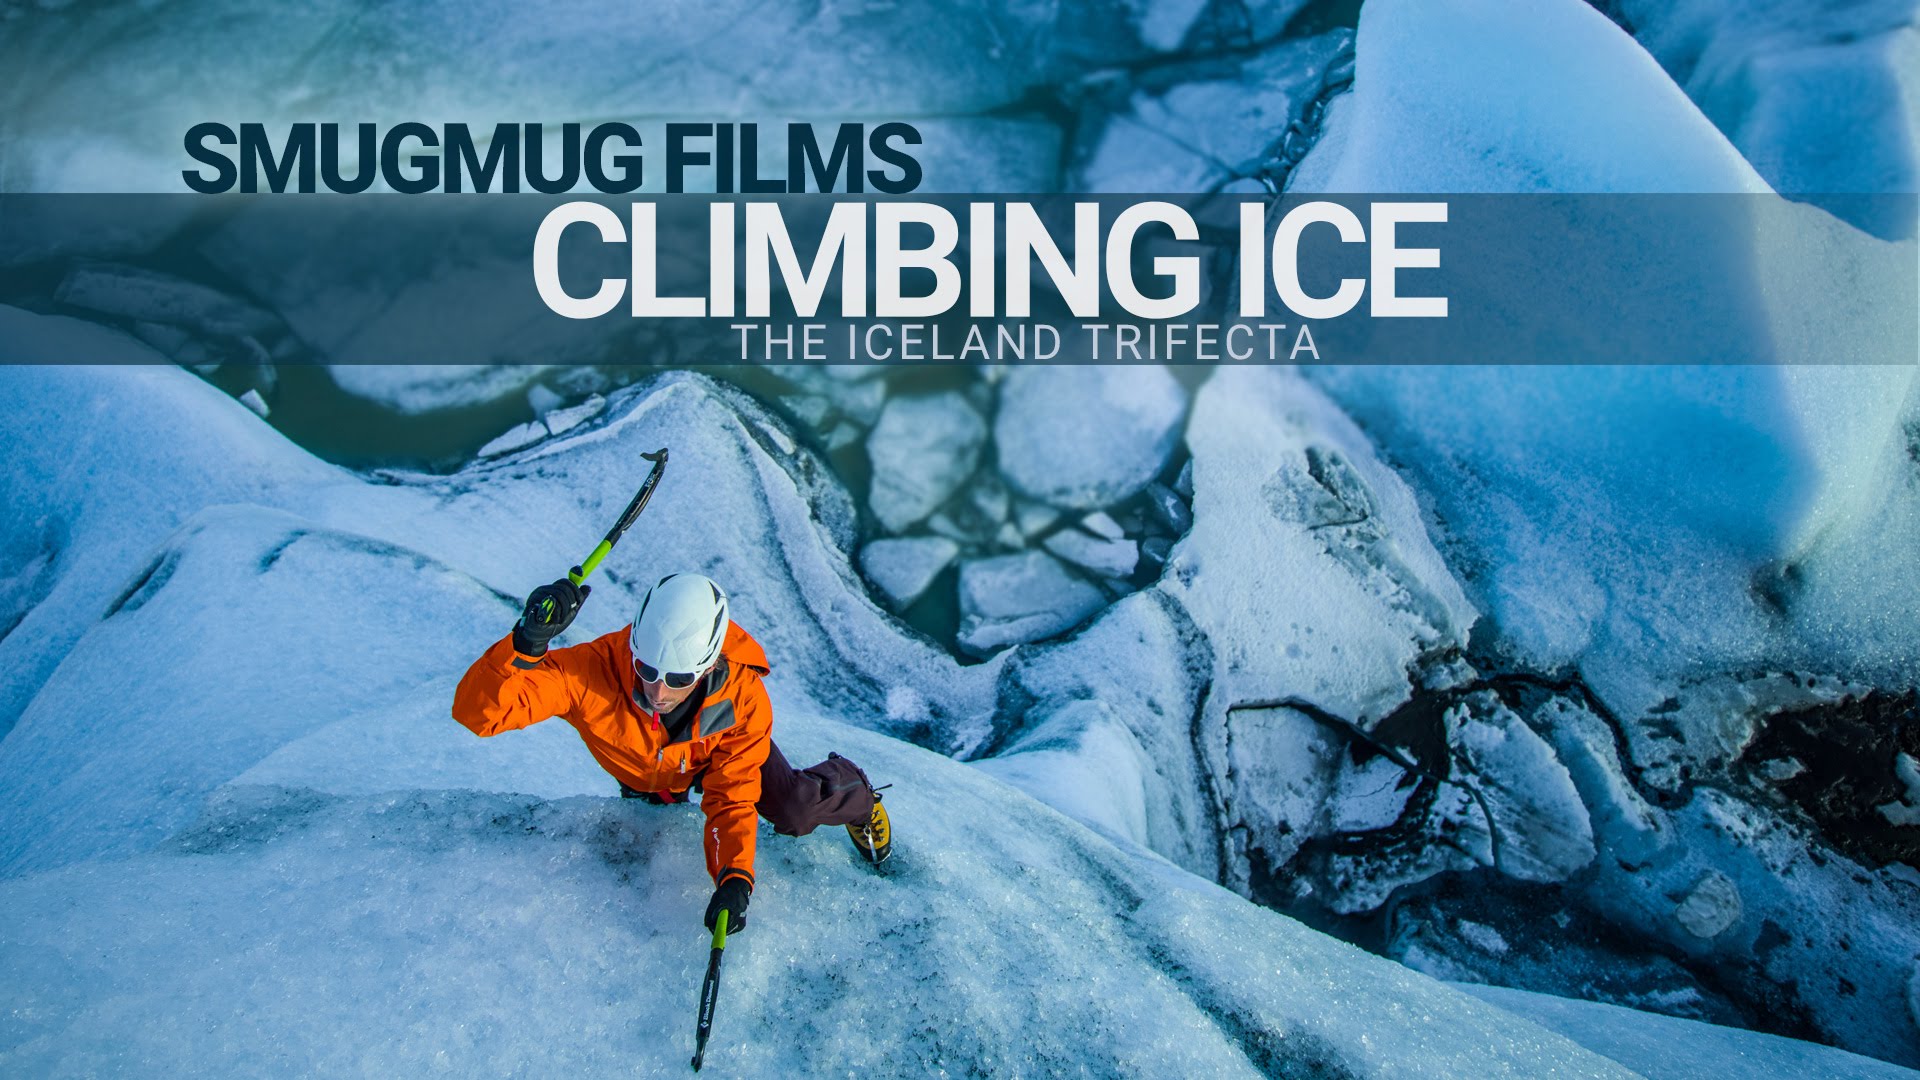 The Iceland Trifecta, escalando en hielo en Islandia